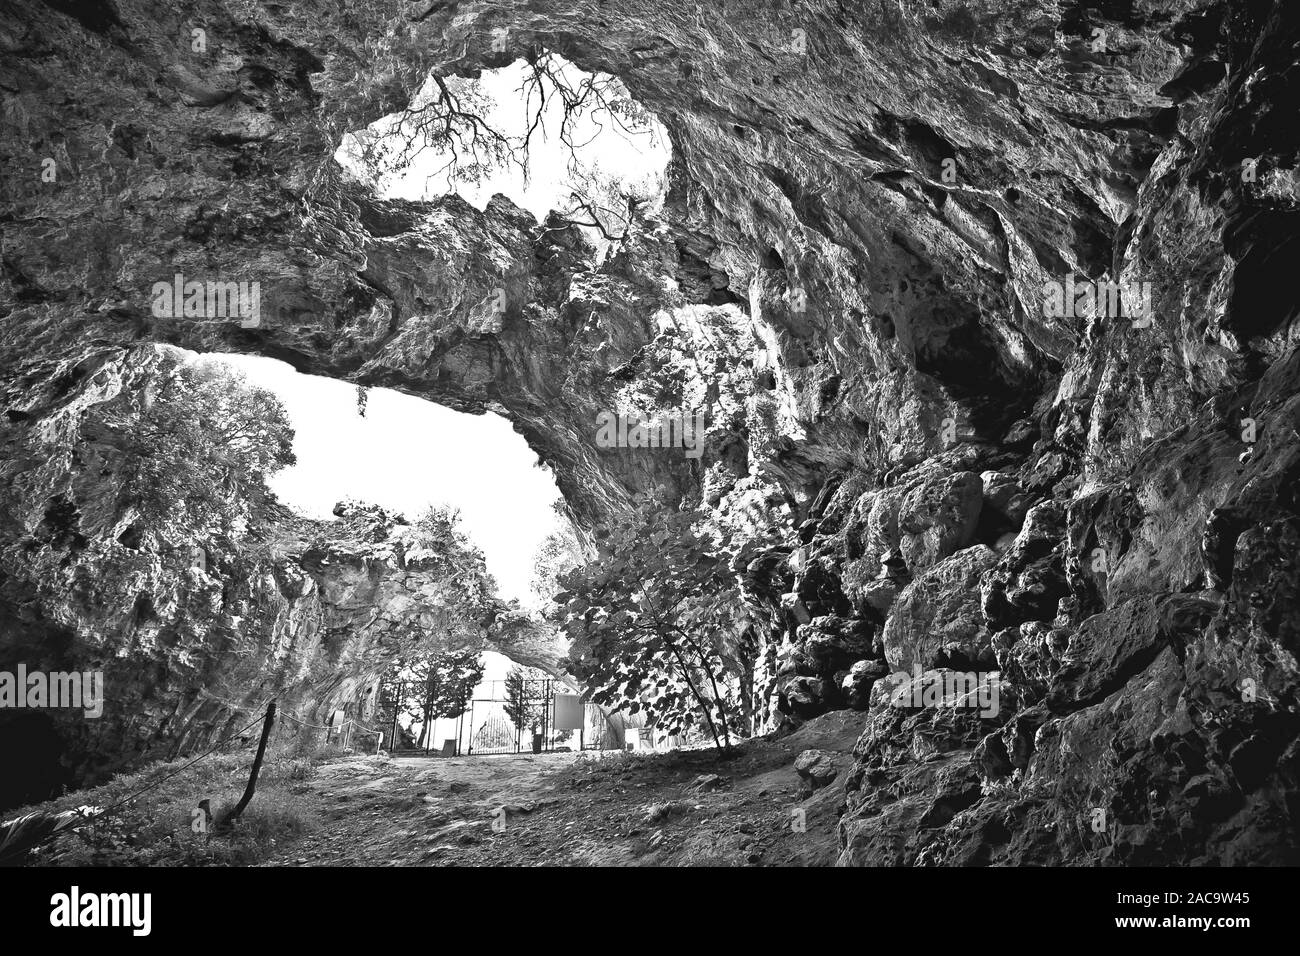 Korcula. Vela spilja)dans la grotte Vela Luka sur l'île de Korcula vue noir et blanc. Un paysage extraordinaire de la Dalmatie, région de la Croatie. Banque D'Images